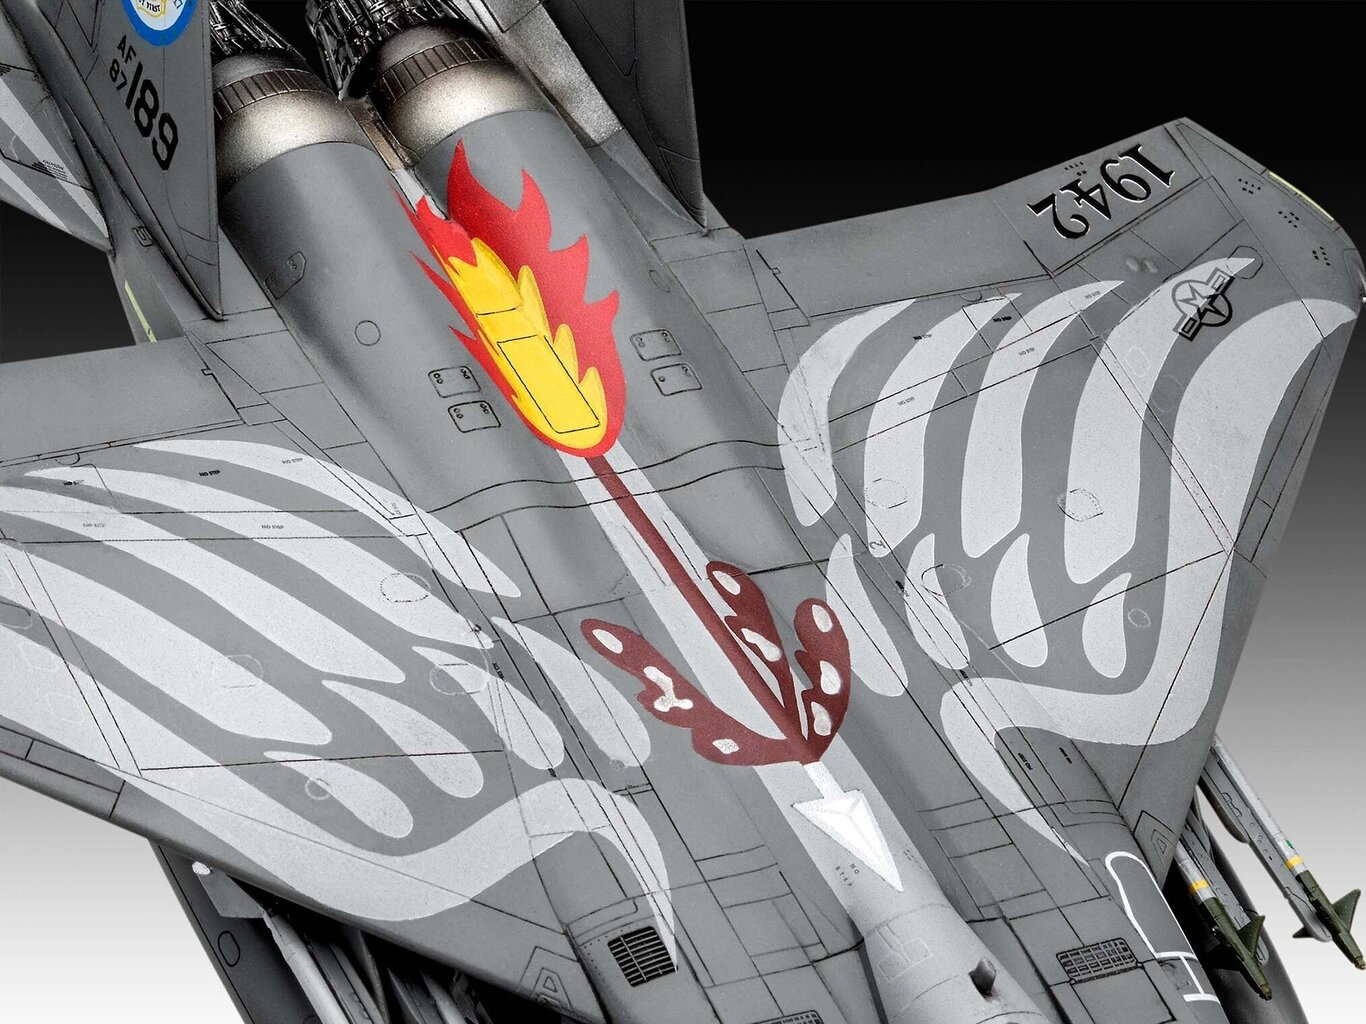 Plastikinis surenkamas modelis Revell McDonnell F-15E Strike Eagle 03841 kaina ir informacija | Konstruktoriai ir kaladėlės | pigu.lt